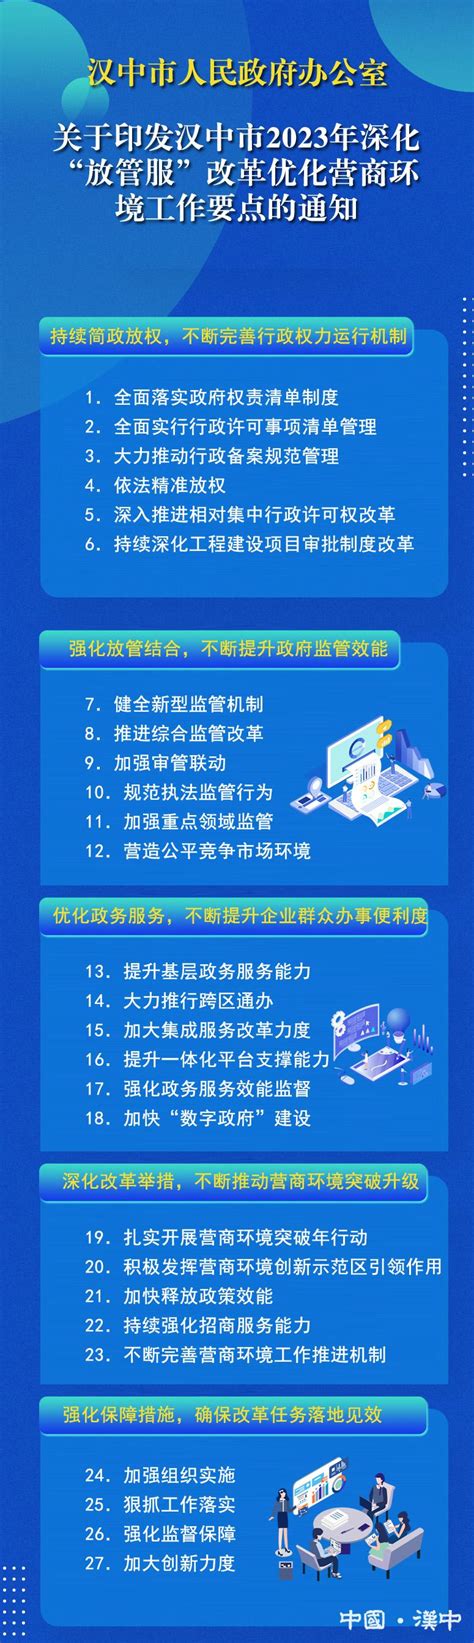 2022年汉中市高中志愿填报图文攻略来啦@所有考生_汉中市考试管理中心